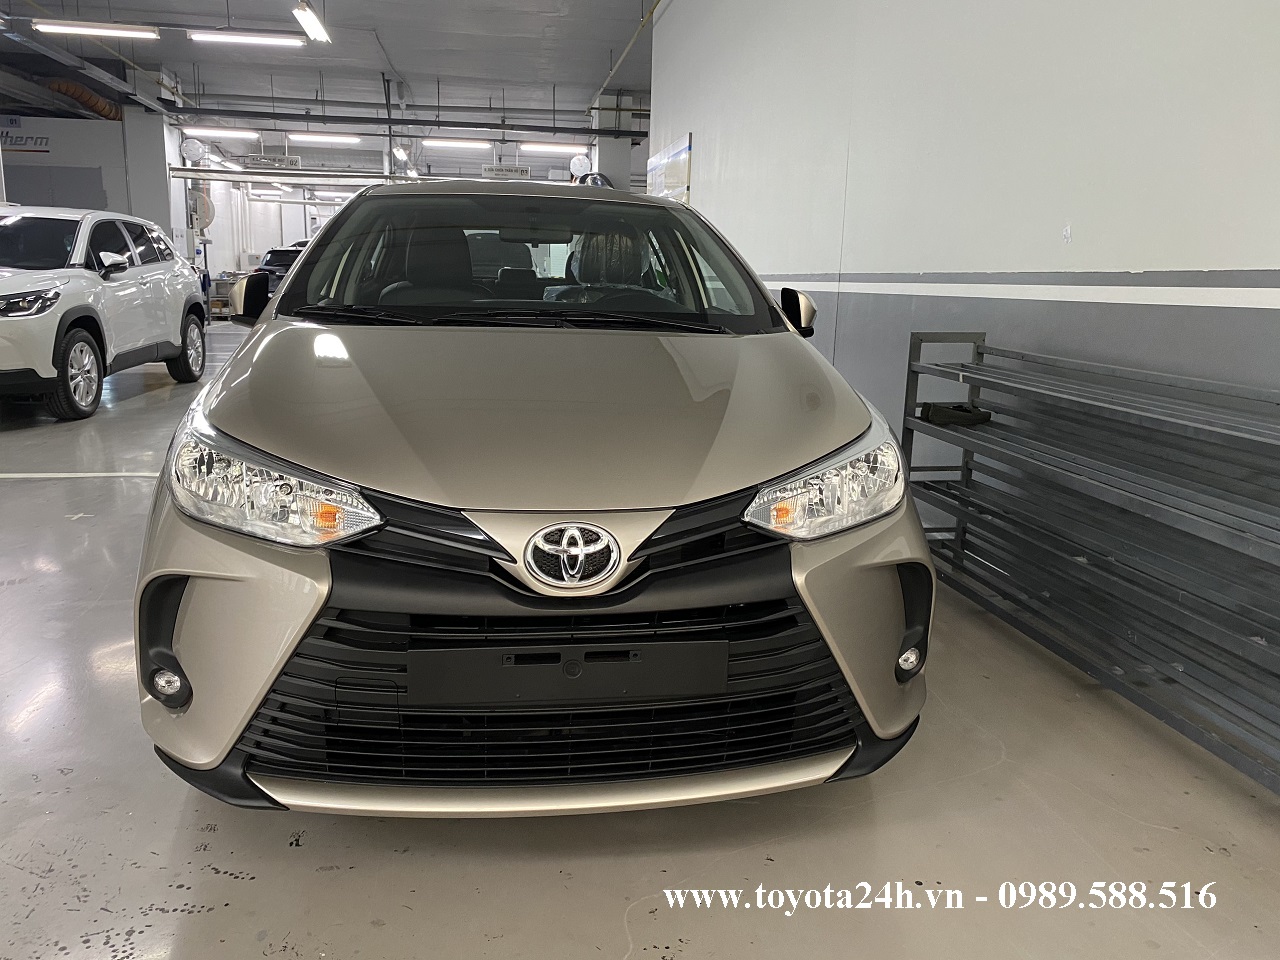 Toyota Vios 1.5E MT Số Sàn Màu Vàng 2022, Hình Ảnh Bảng Giá Xe Lăn Bánh Mới Nhất